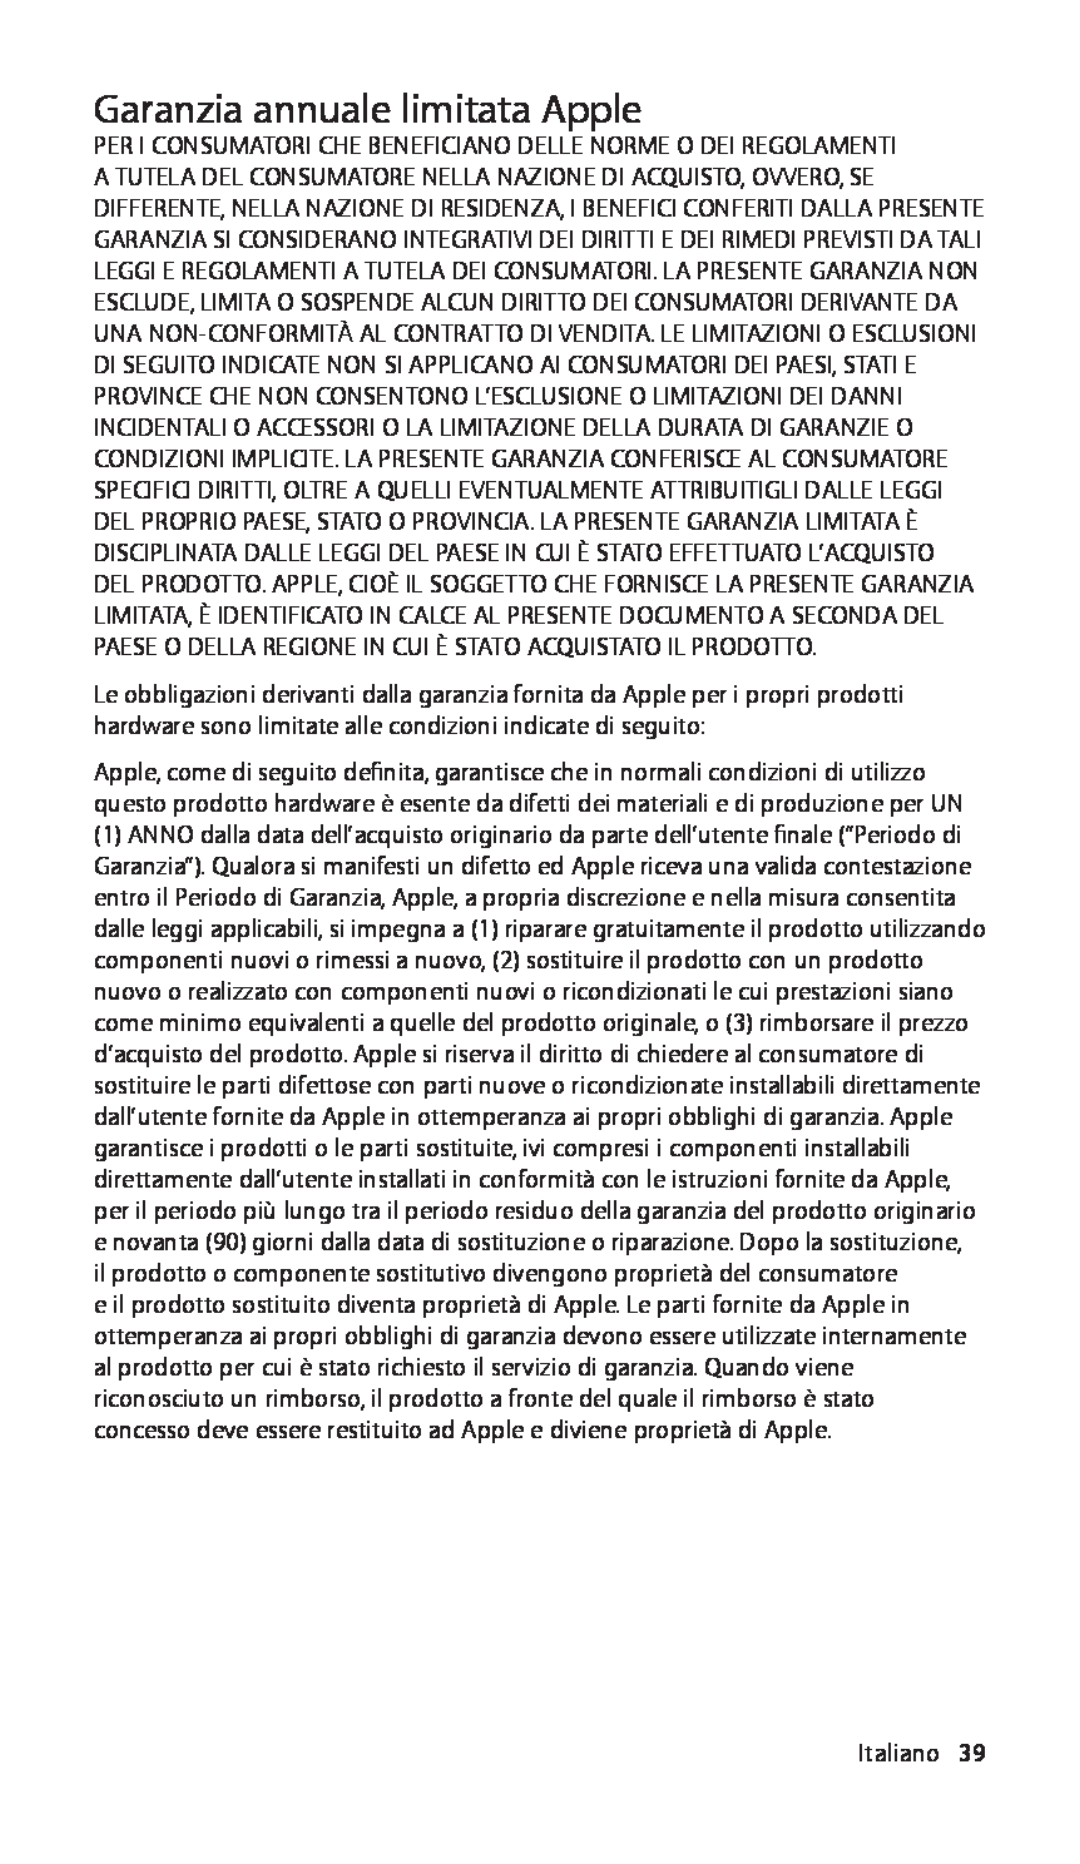 Apple ZM034-4942-A manual Garanzia annuale limitata Apple, Italiano39 